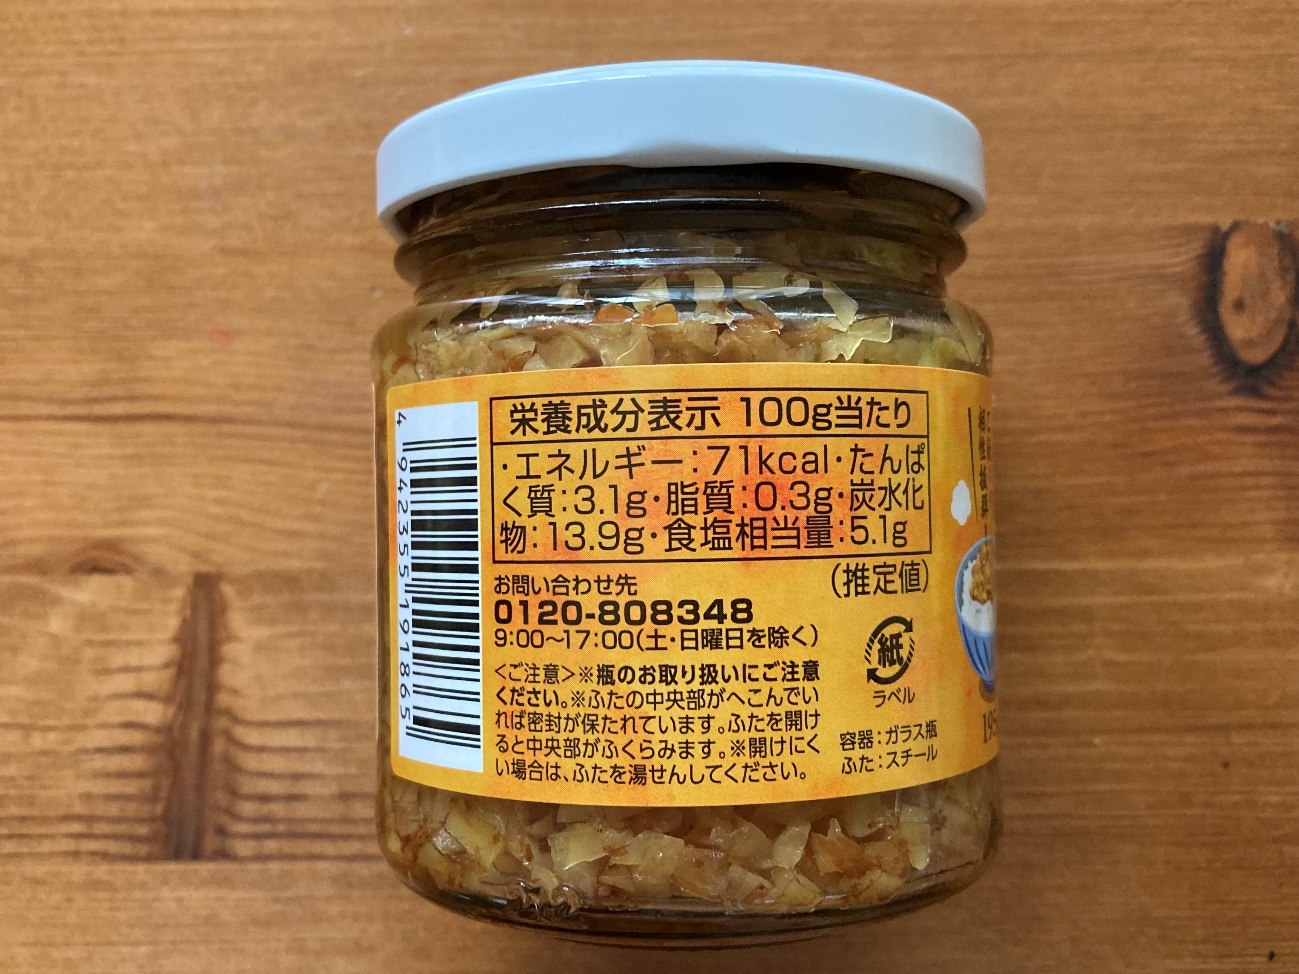 業務スーパーのおかか生姜の栄養成分表示